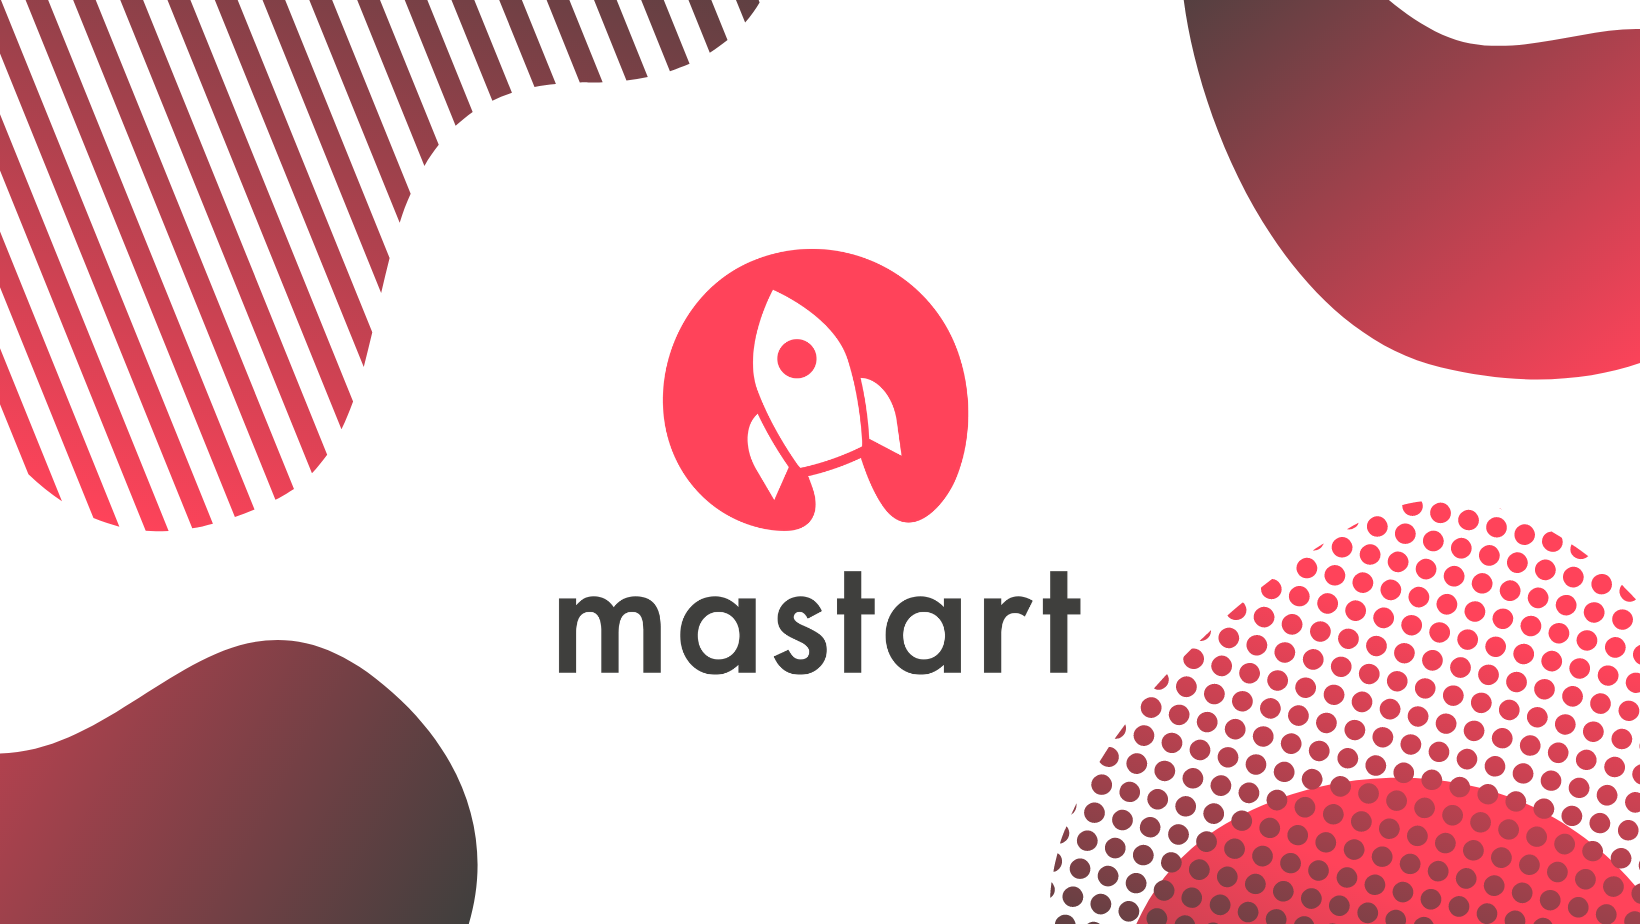 MaStart startup verseny: a pénznyeremény mellett mentorálást is biztosítanak a legjobbaknak